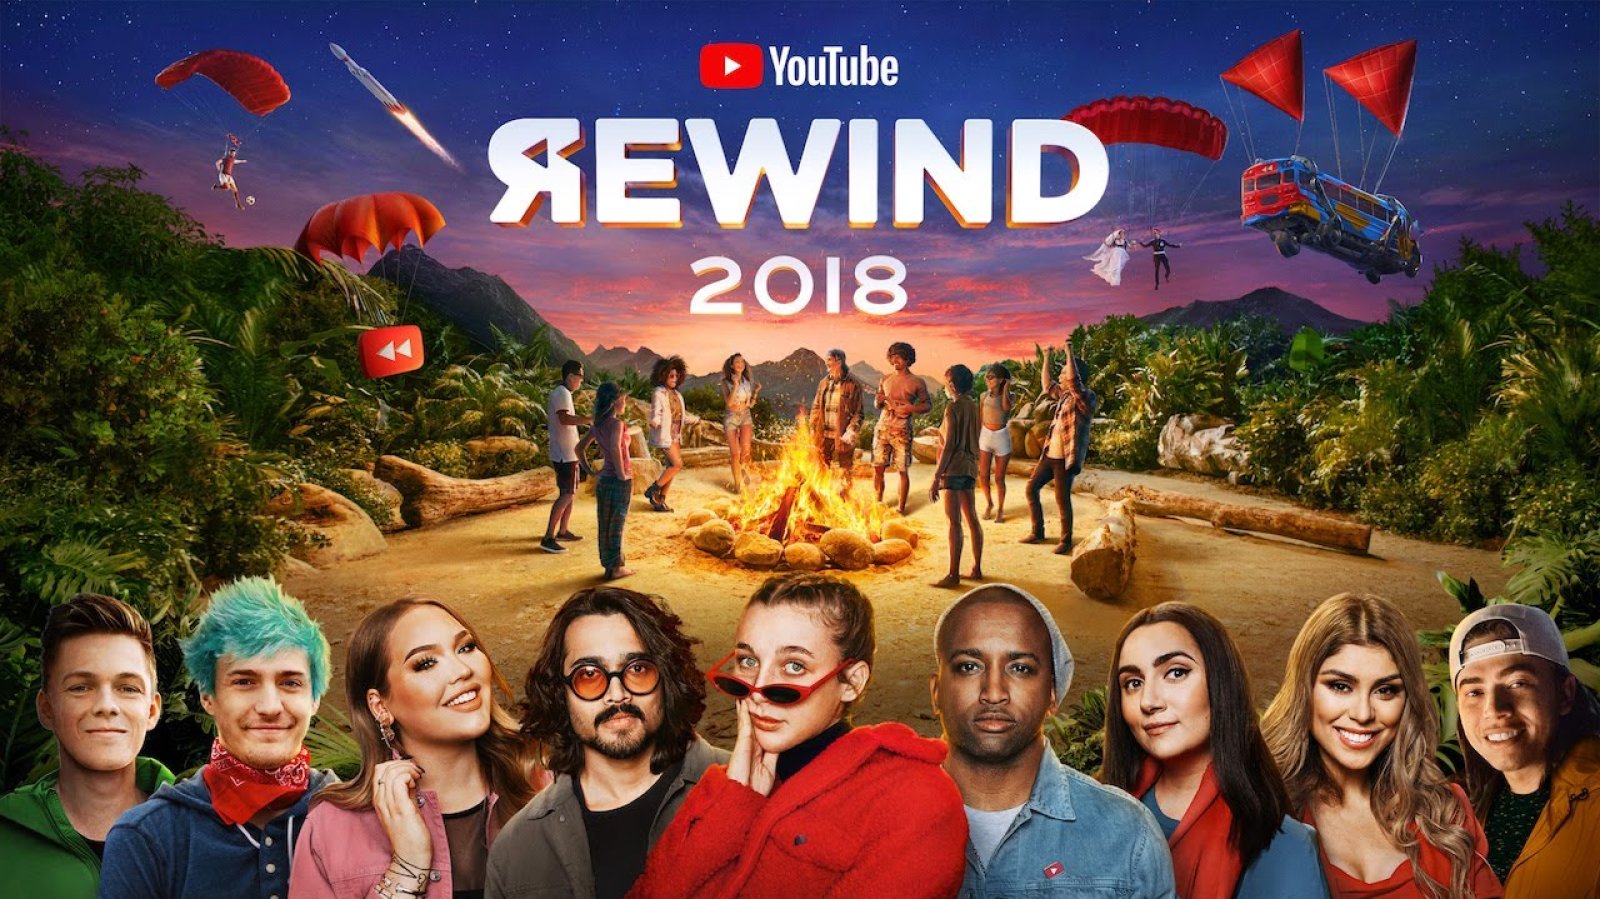 YouTube Rewind 2018, en beğenilmeyen video oldu